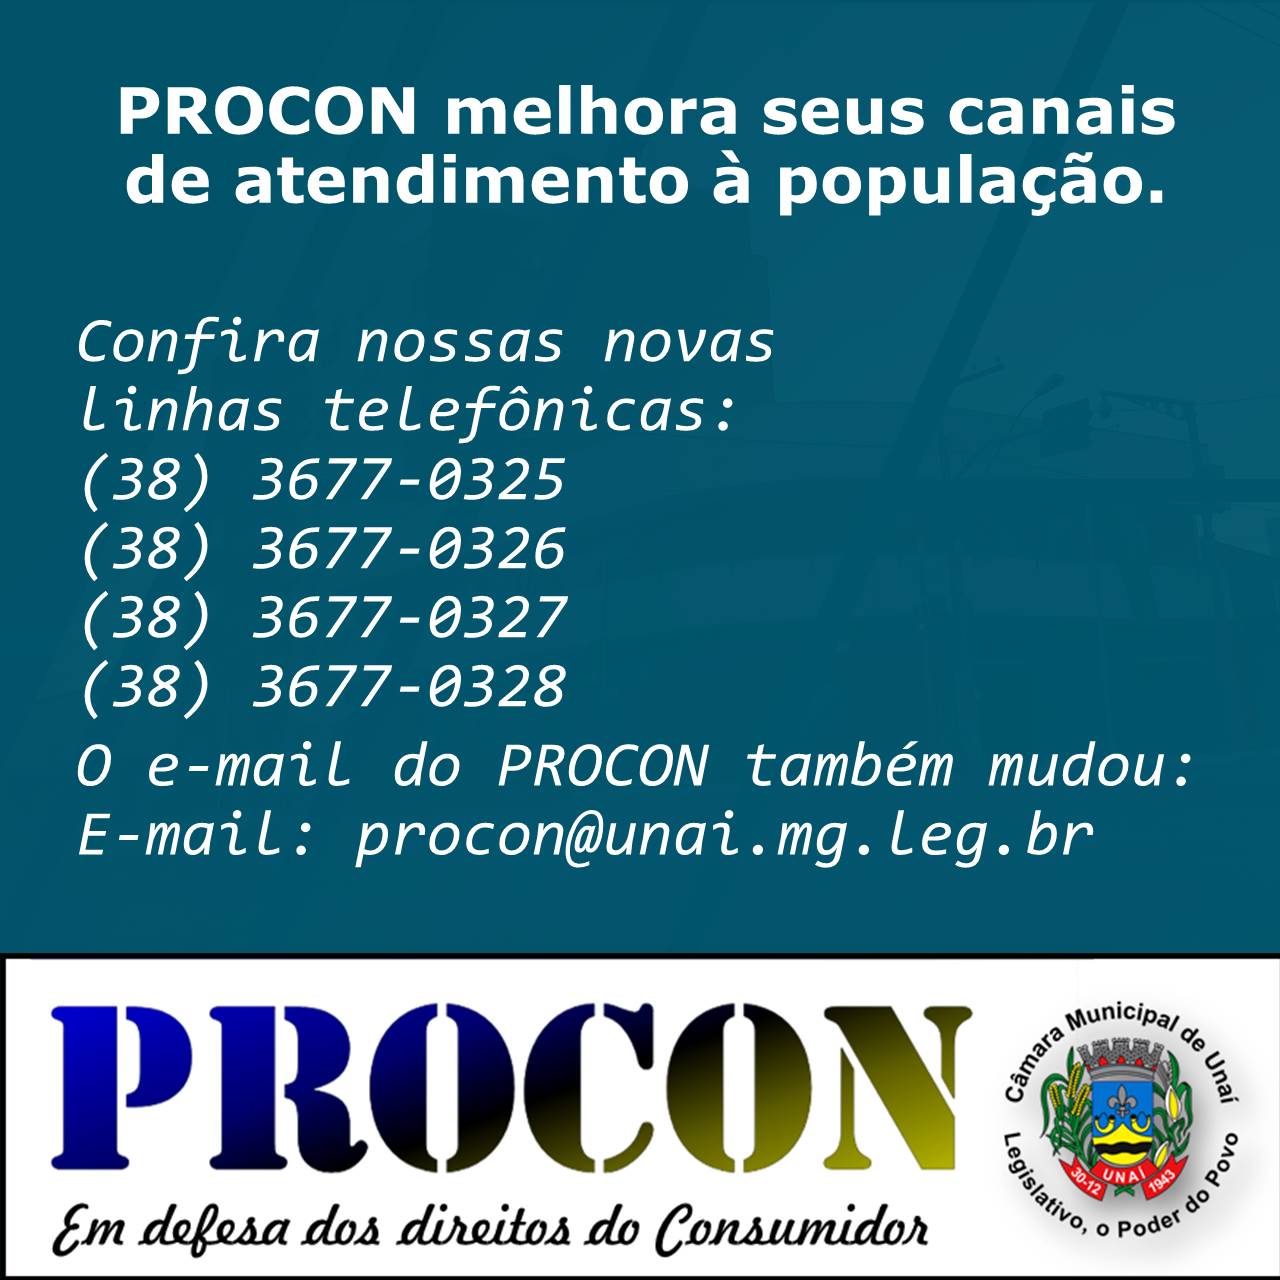 PROCON MELHORA SEUS CANAIS DE ATENDIMENTO À POPULAÇÃO. 